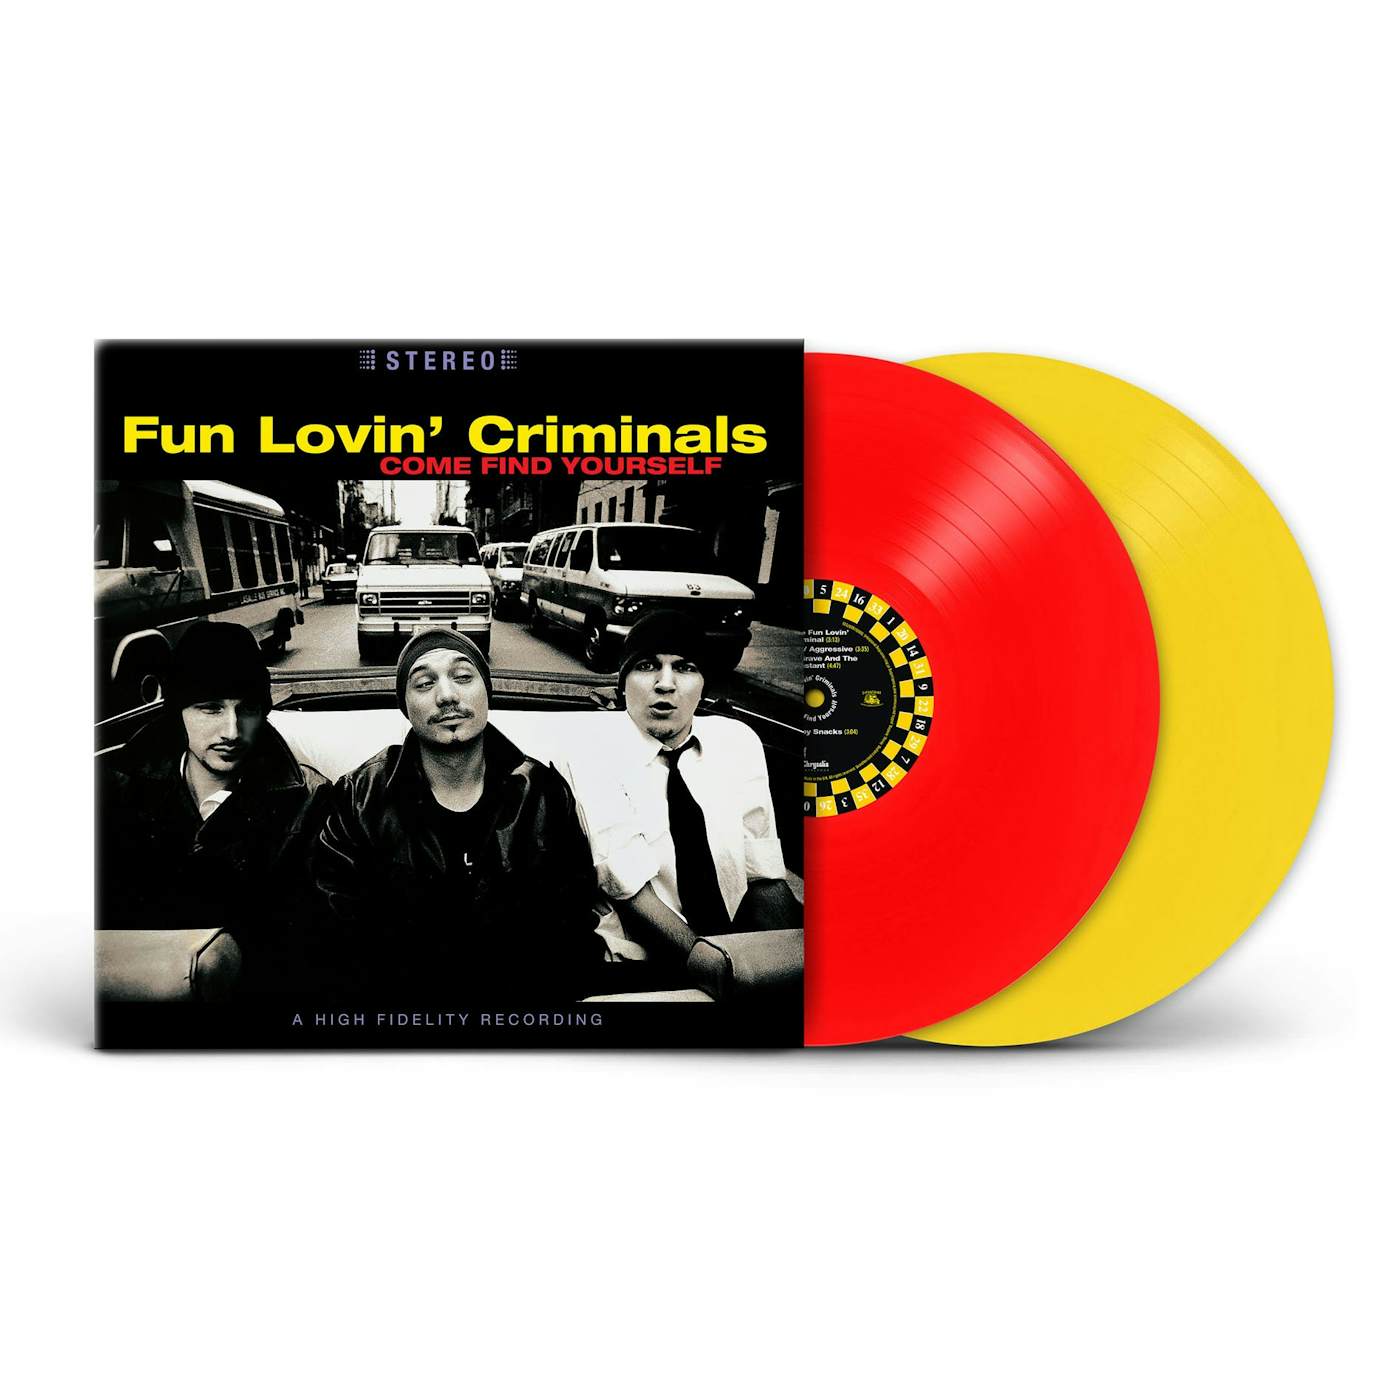 Fun Lovin' Criminals Come Find Yourself (25 ára afmælisútgáfa)